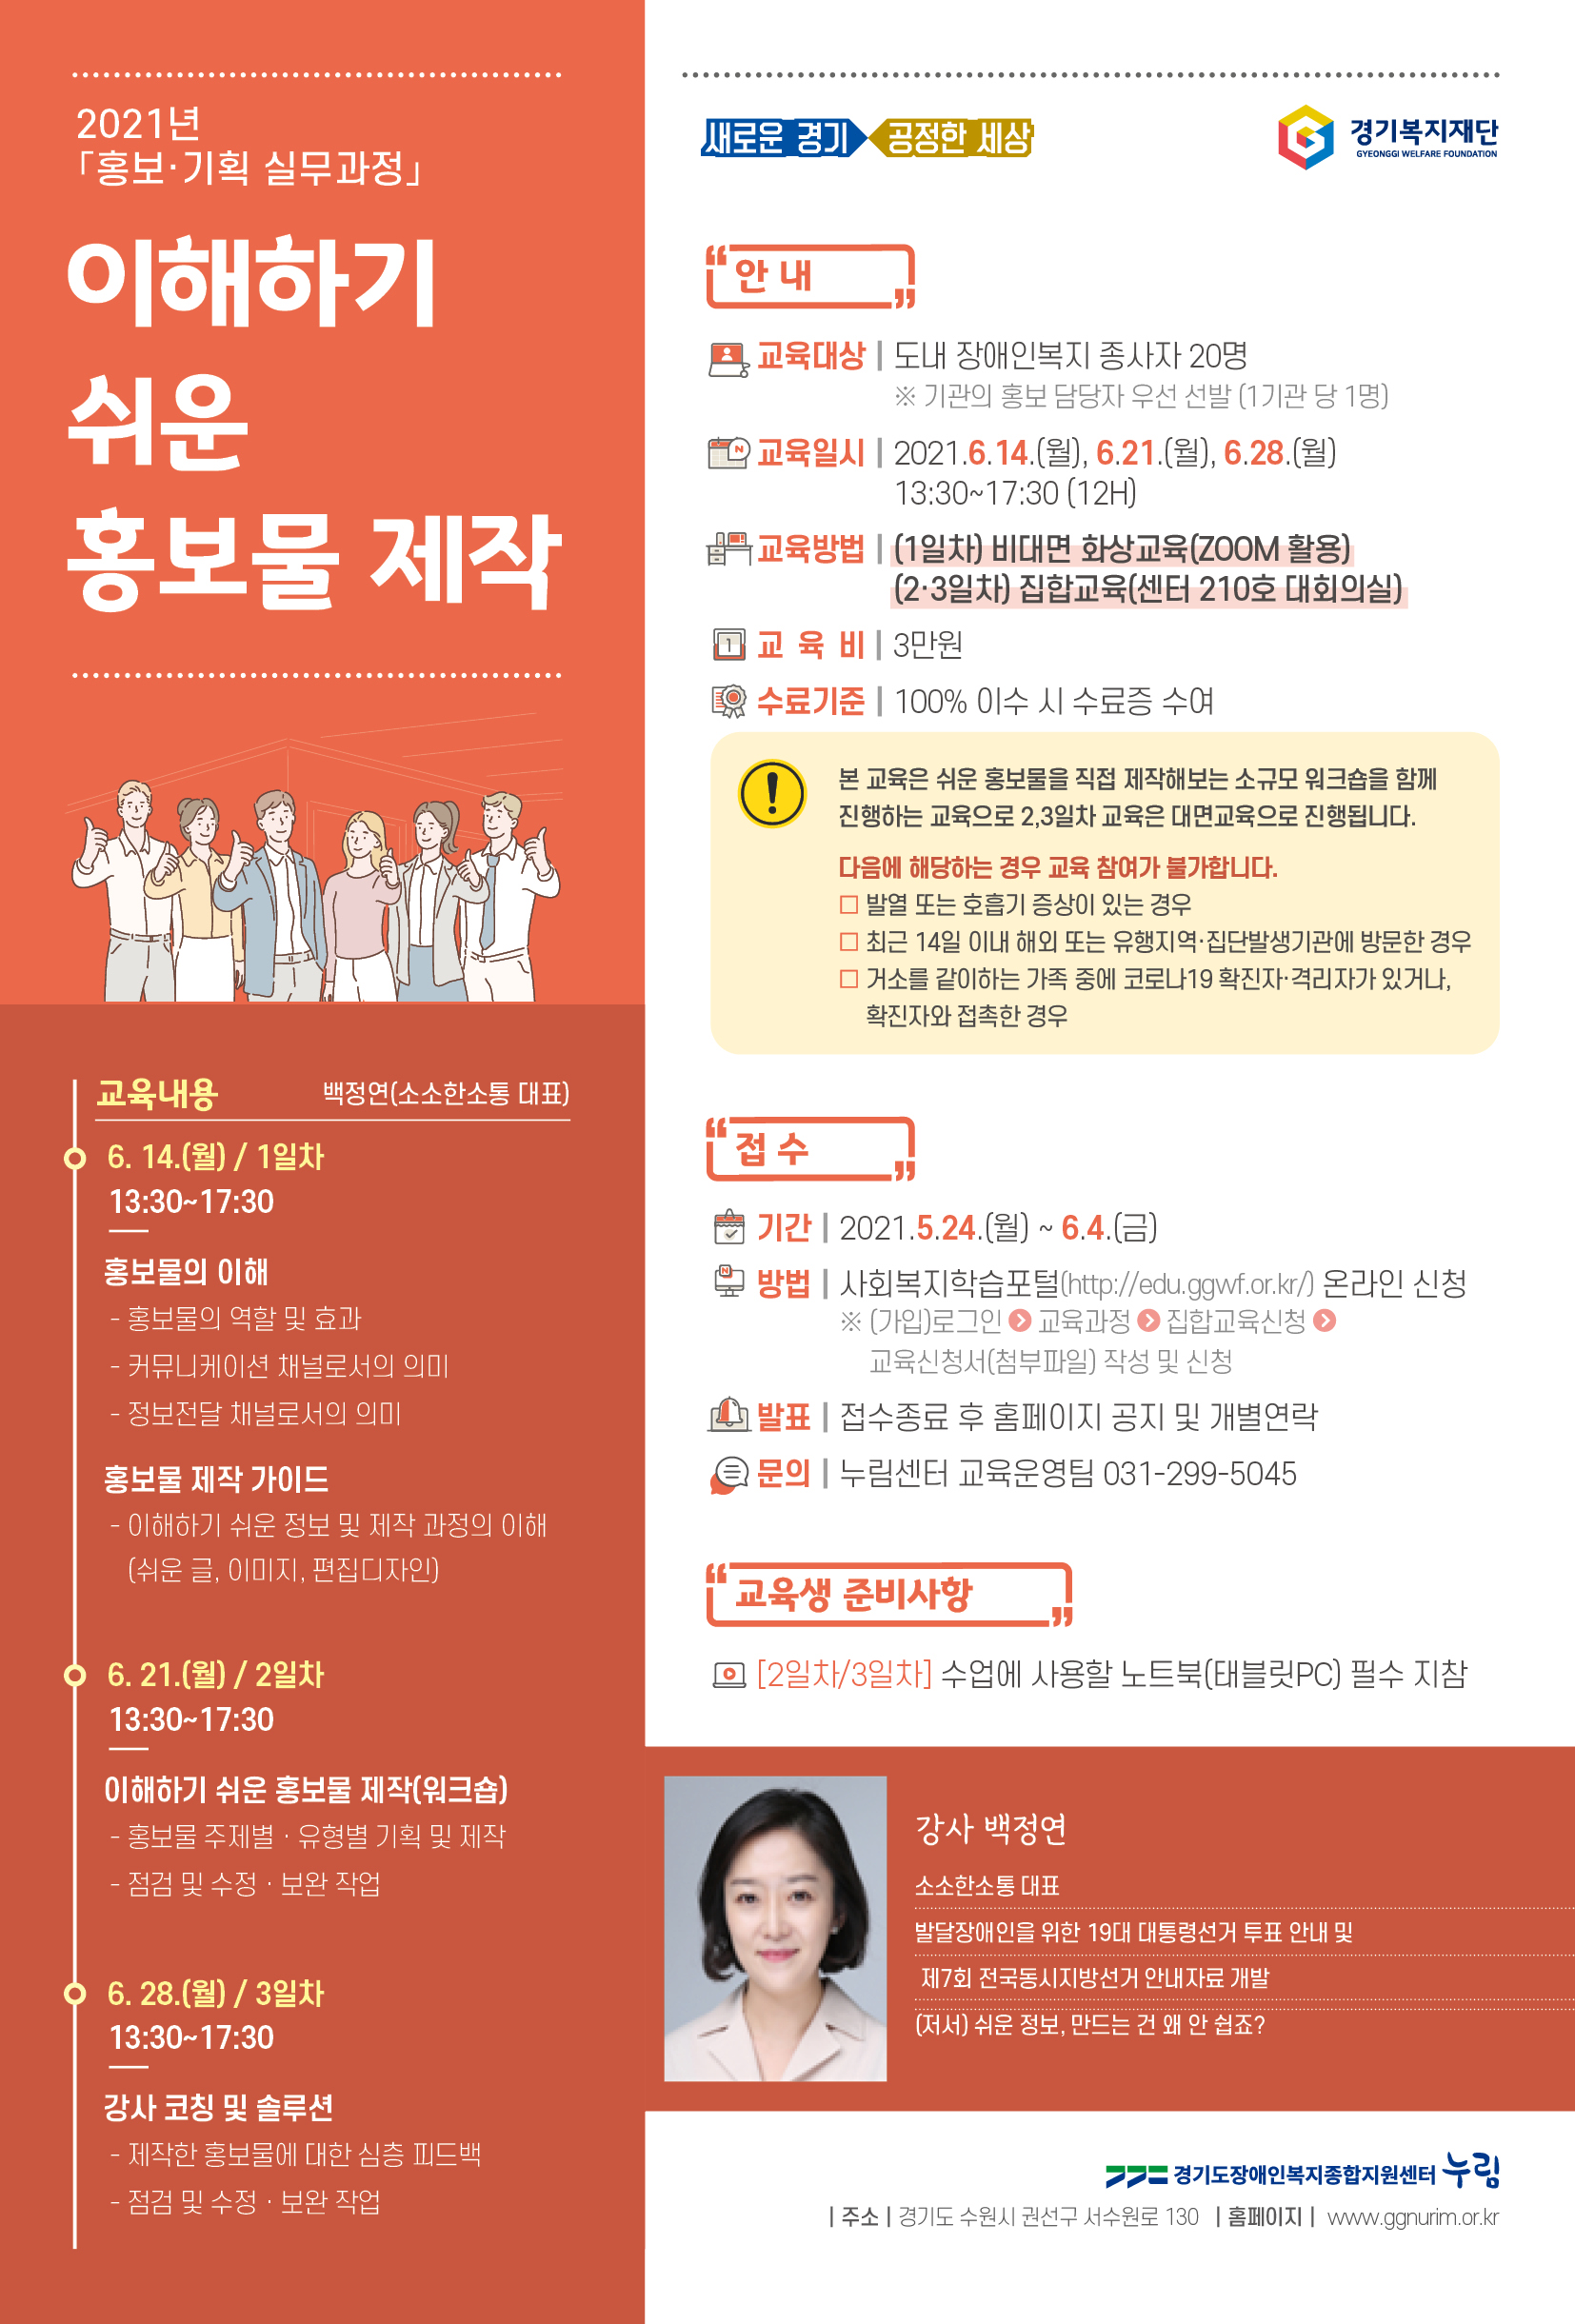 경기도장애인복지종합지원센터_이해하기 쉬운 홍보물 제작 강좌 웹자보.jpg